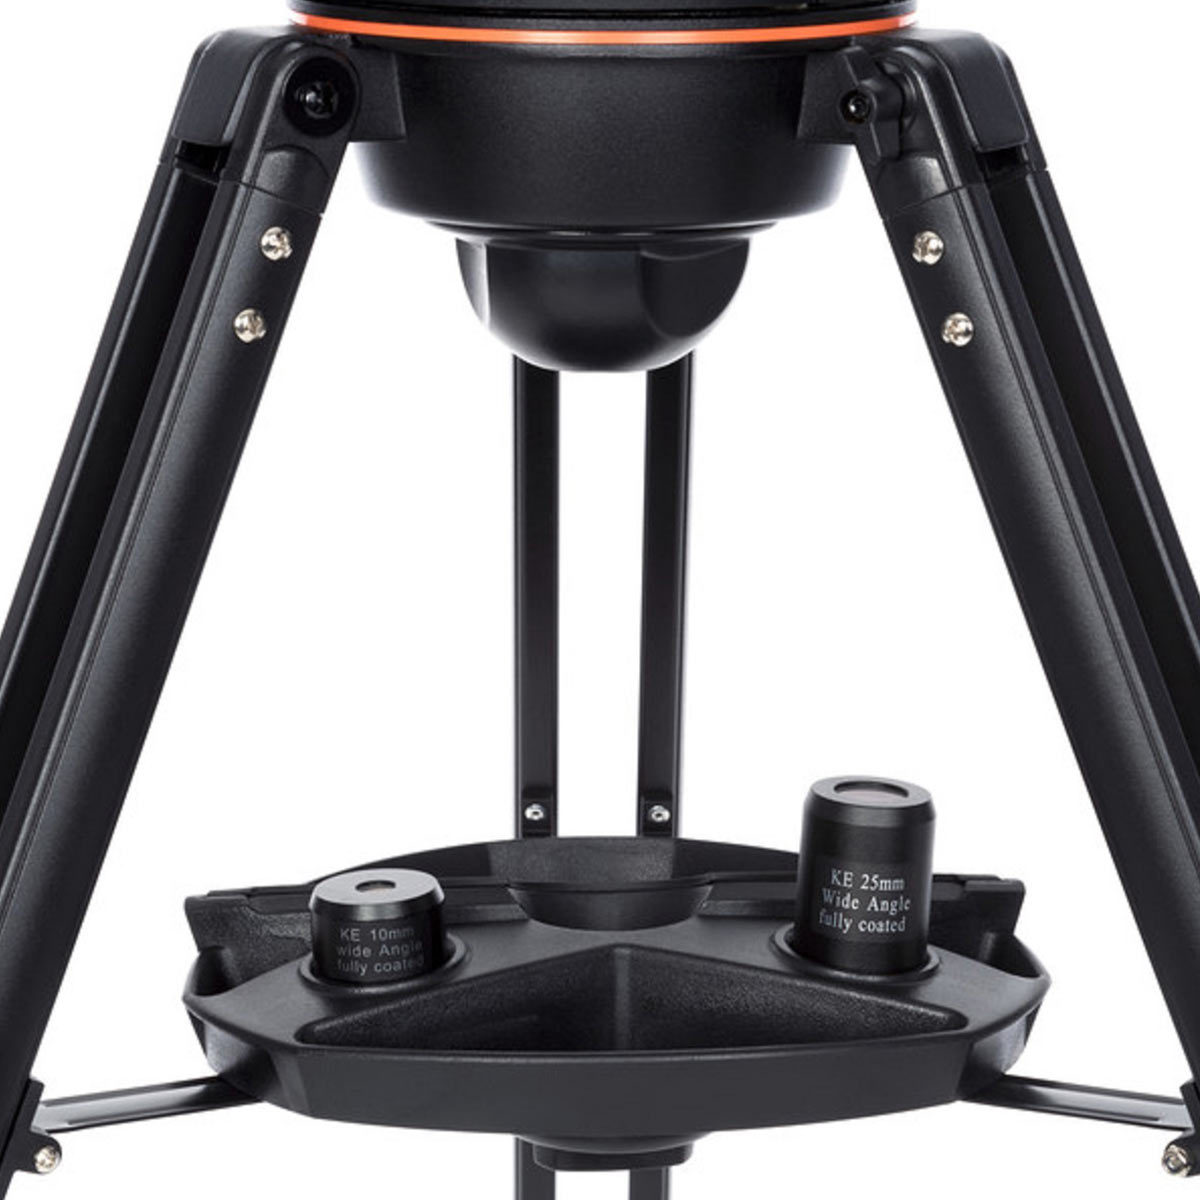 Zoomedinshotofthetripodunderneaththetelescope